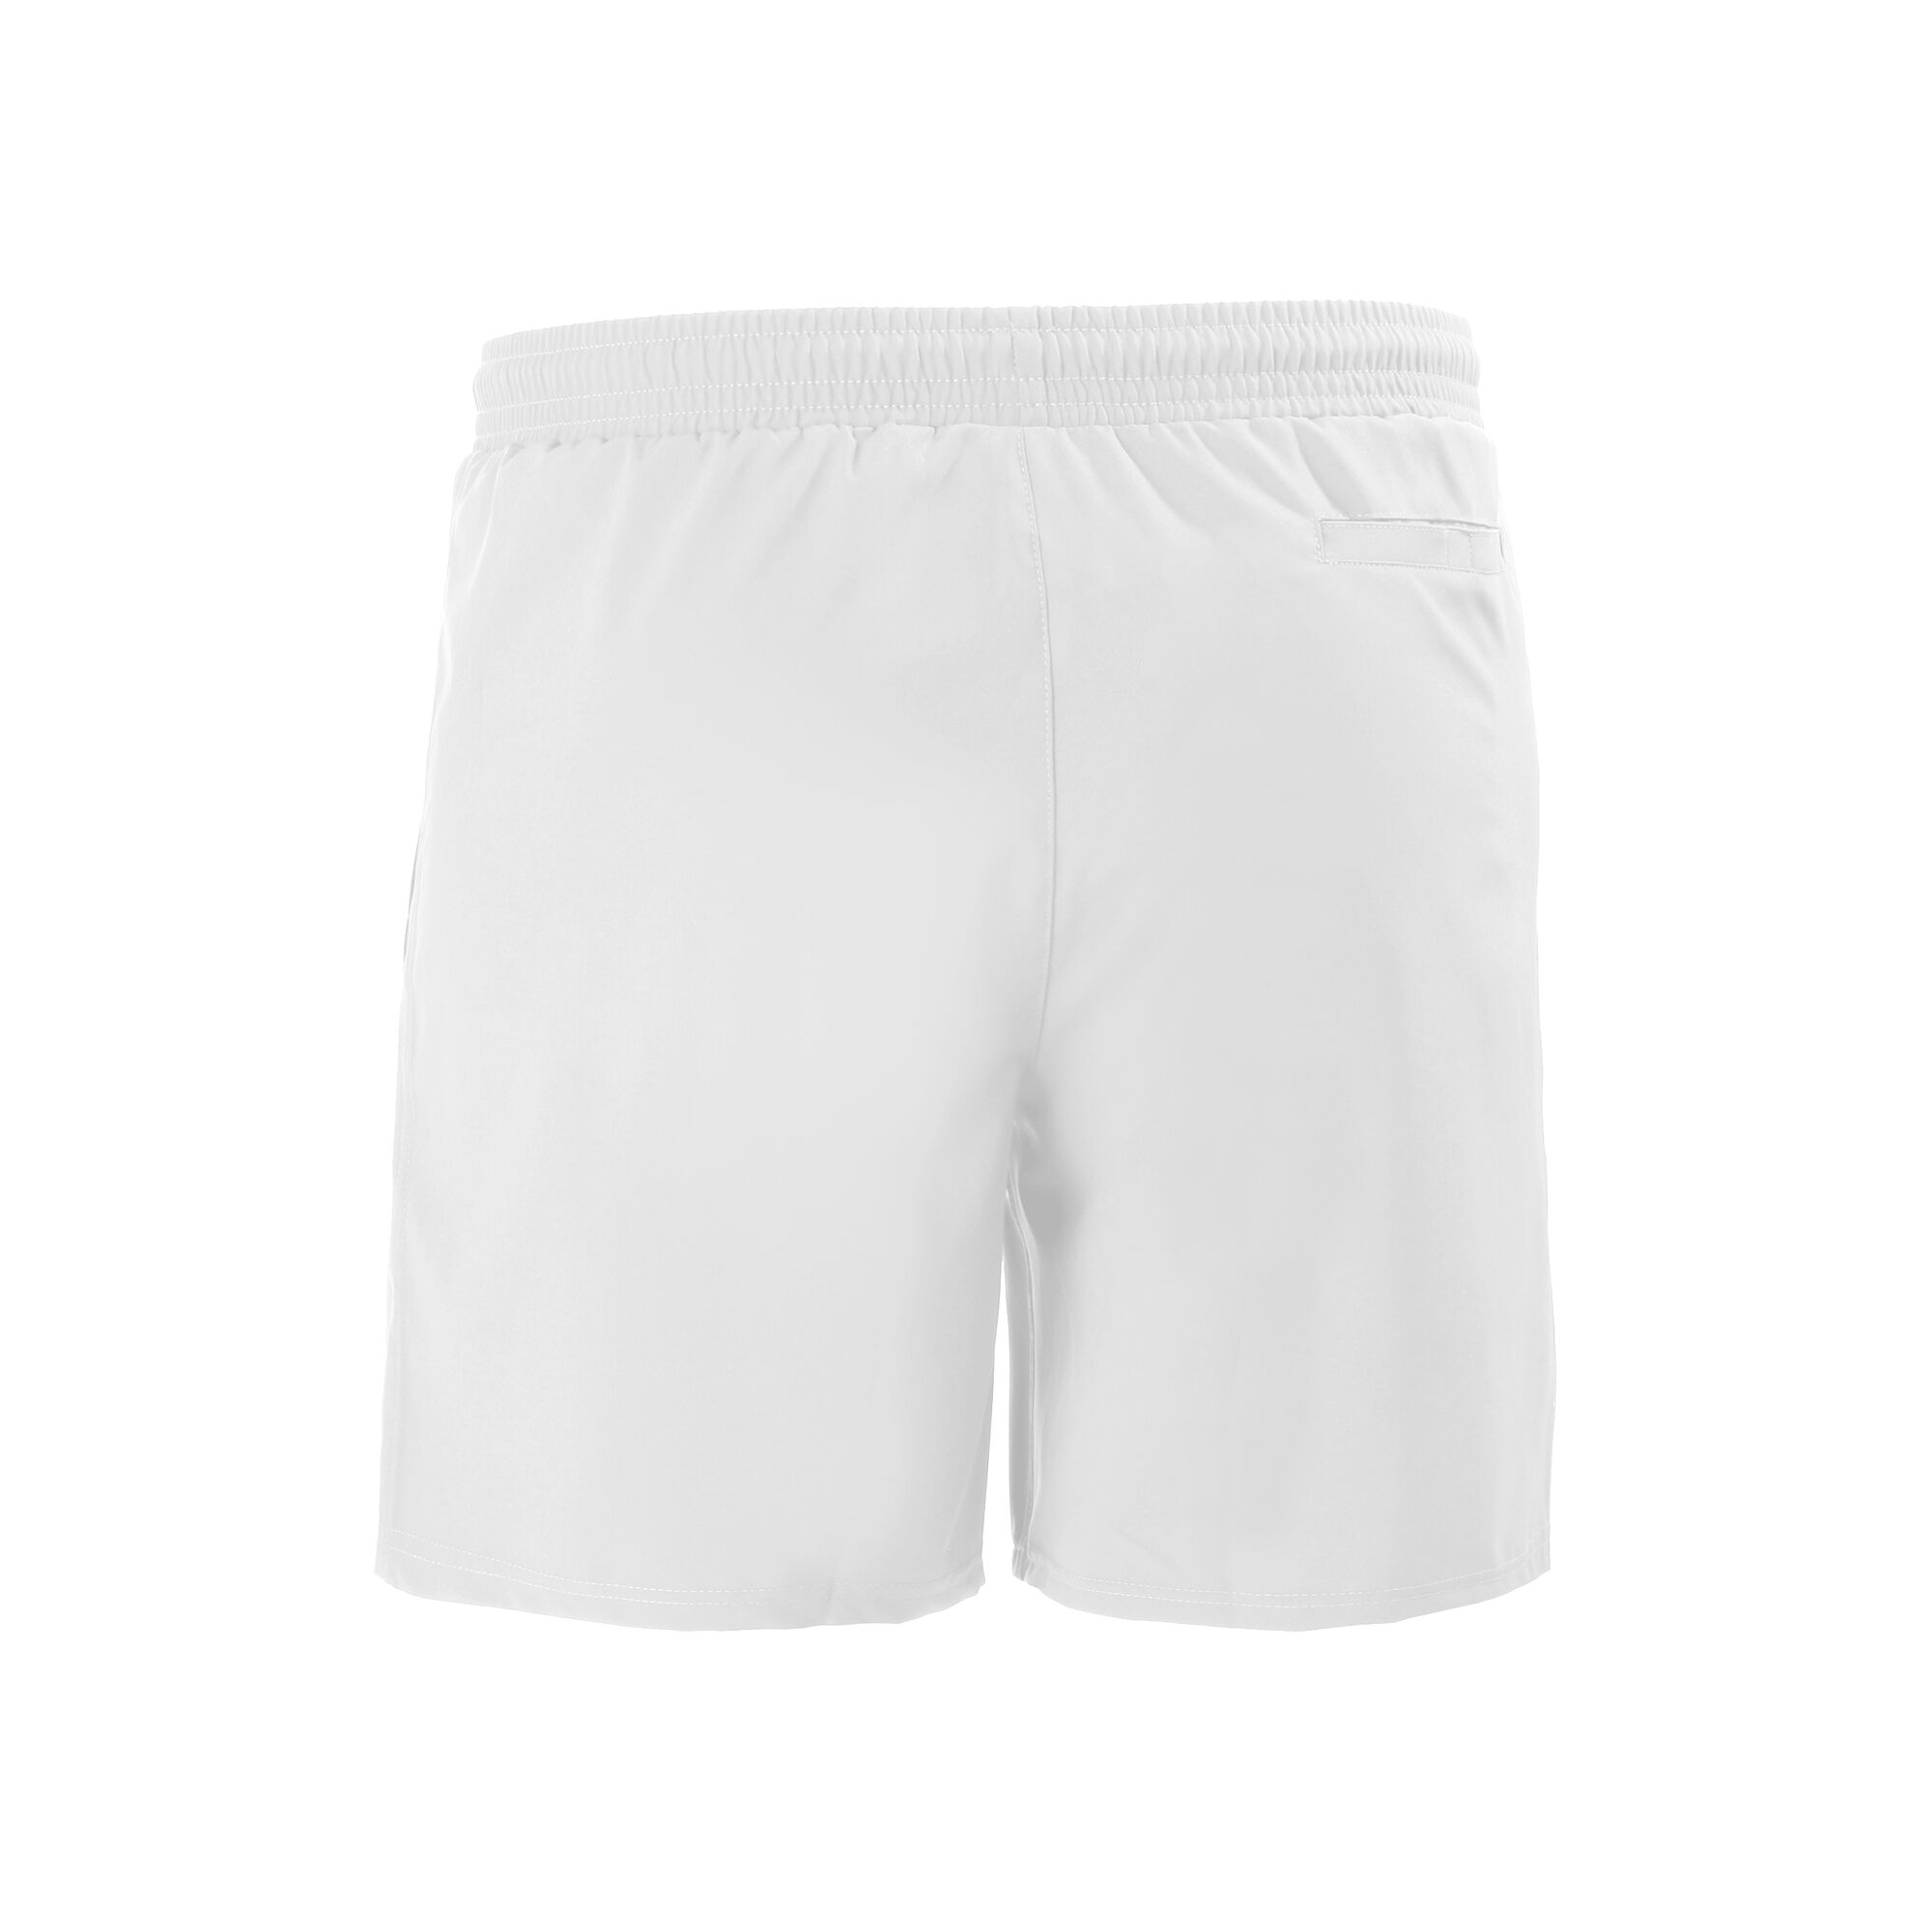 buy Australian Shorts Men - White online | Tennis-Point